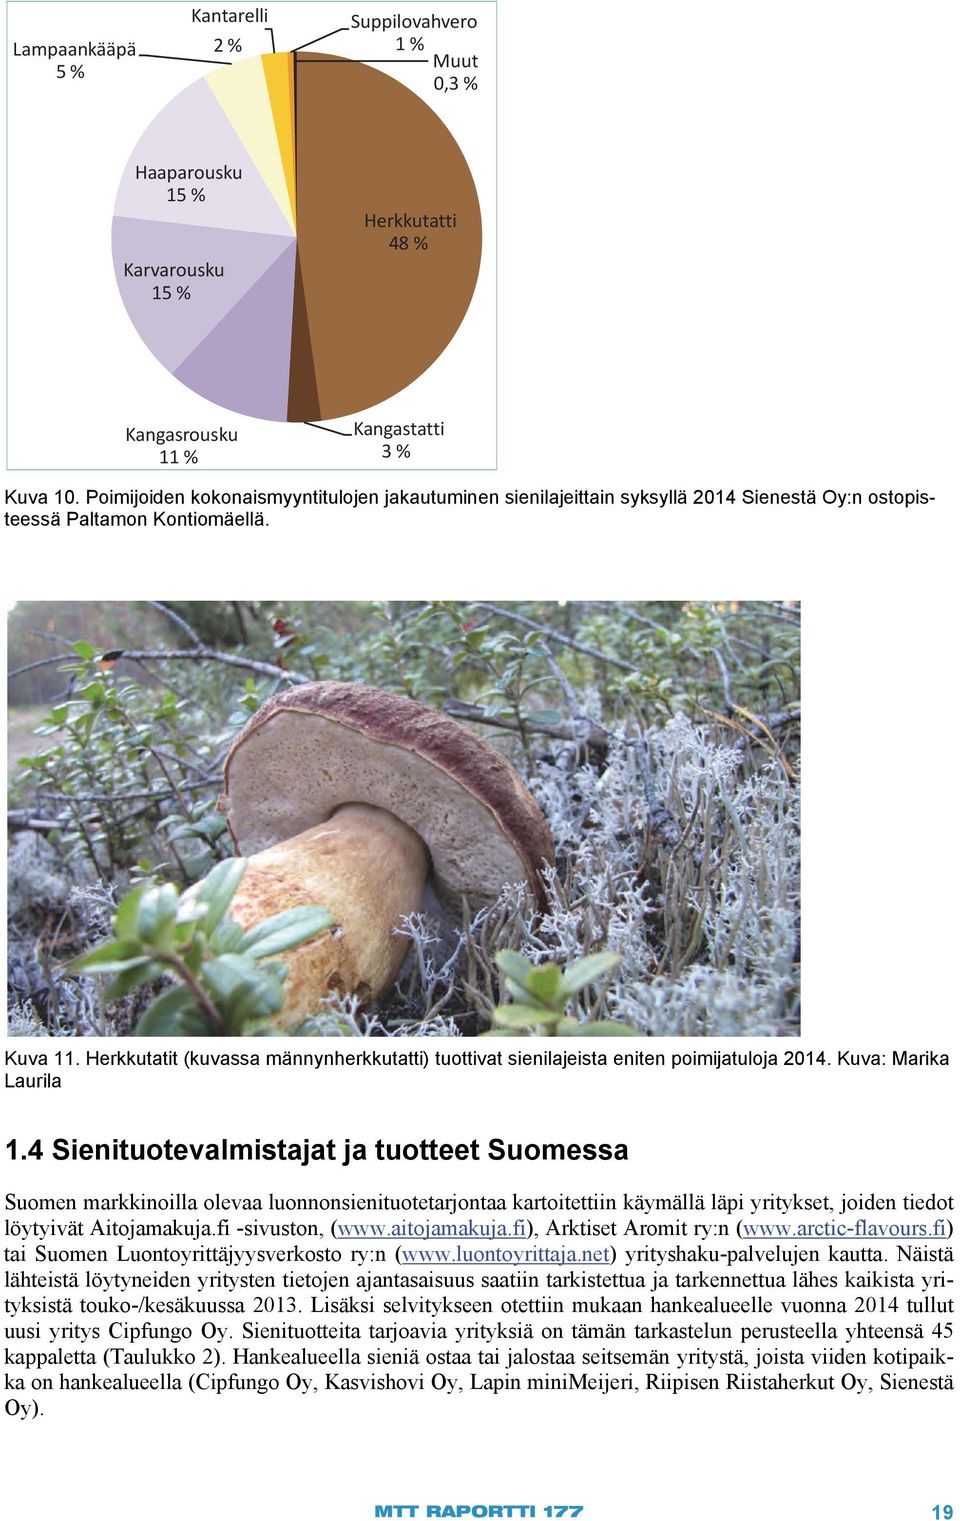 Herkkutatit (kuvassa männynherkkutatti) tuottivat sienilajeista eniten poimijatuloja 2014. Kuva: Marika Laurila 1.